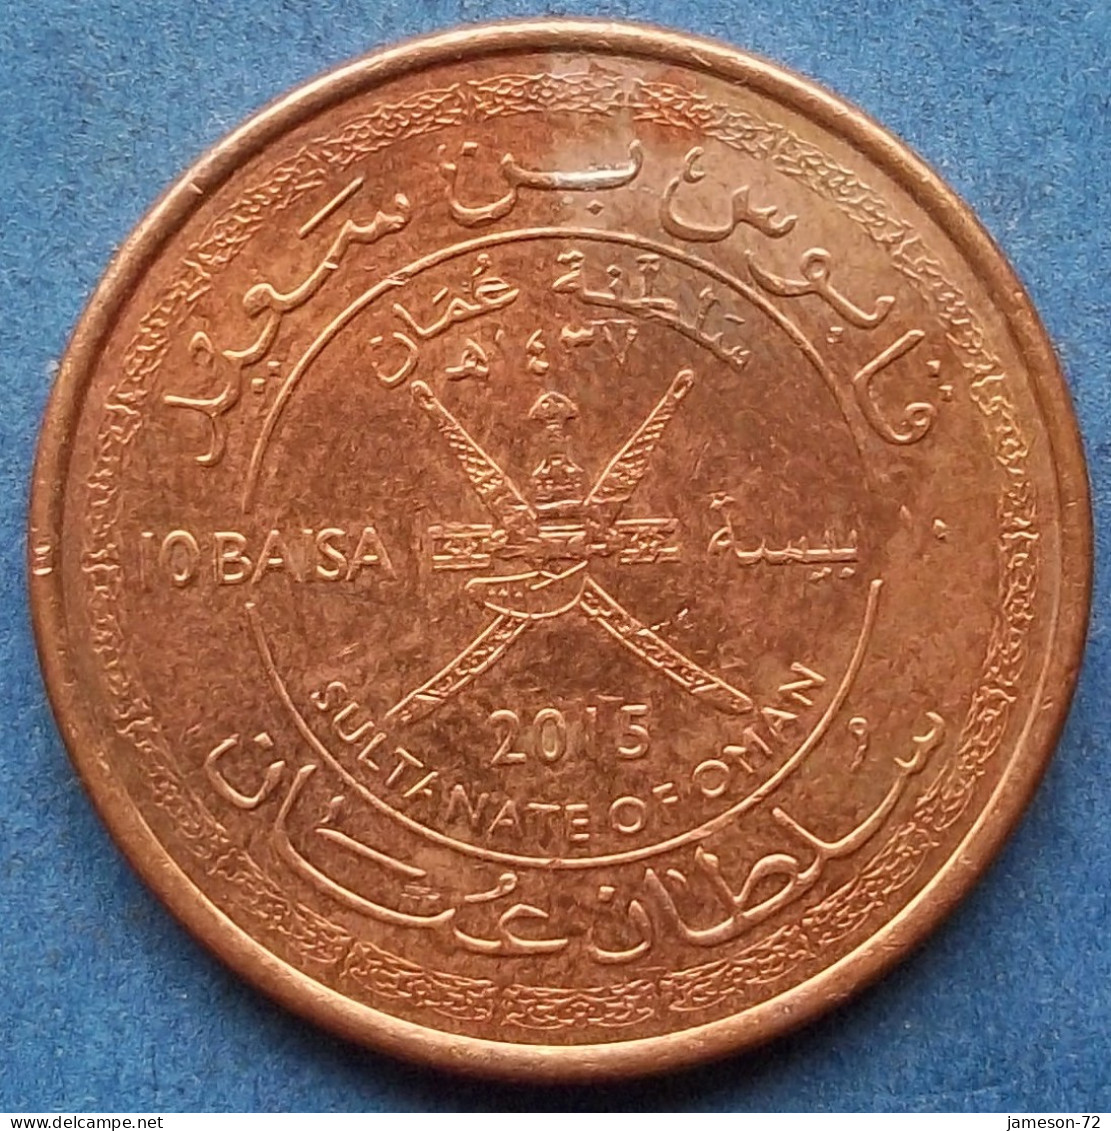 OMAN - 10 Baisa AH1437 2015AD KM# 194 Sultan Quabus Bin Sa'id Reform Coinage (1972) - Edelweiss Coins - Omán